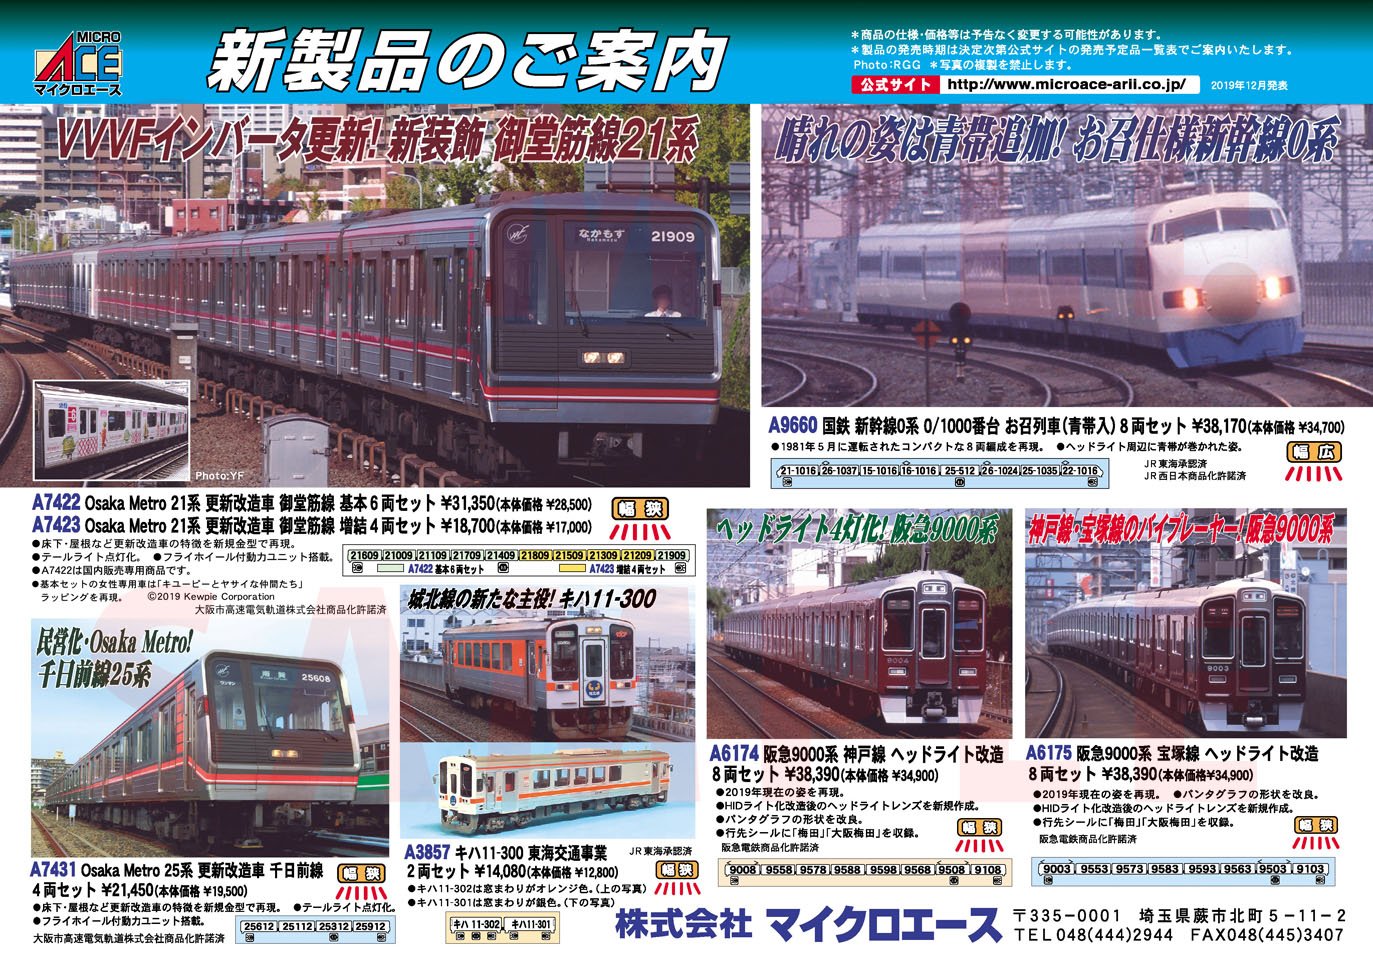 キハ11-300 東海交通事業 (2両セット) (鉄道模型) - ホビーサーチ 鉄道模型 N